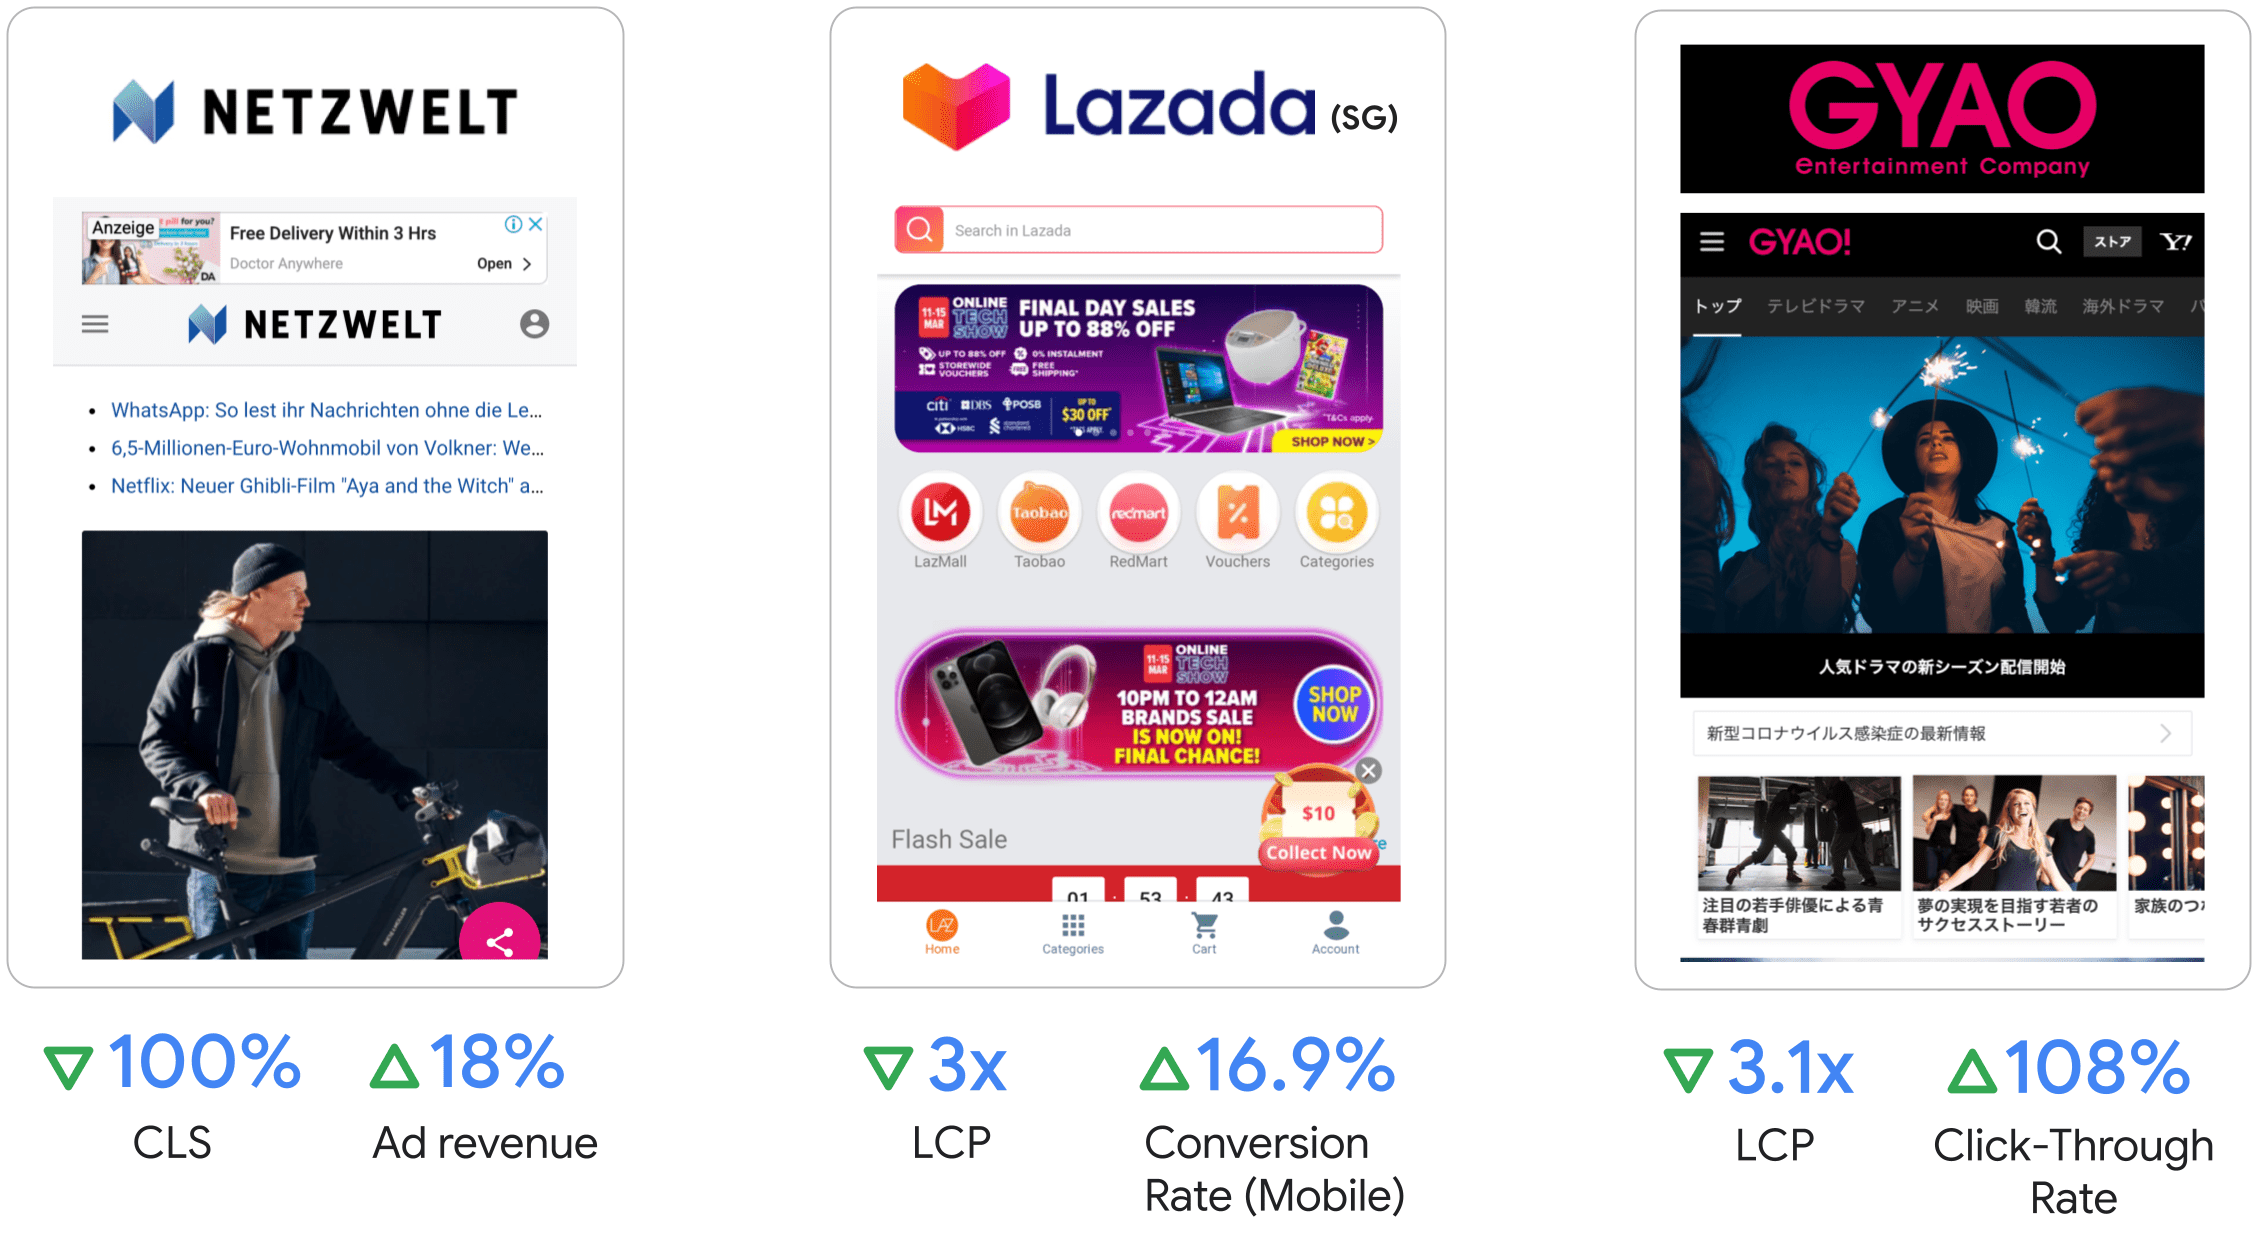 Netzwelt steigerte den Werbeumsatz um 18 %,
Lazada konnte den LCP-Wert verdreifachen und die Conversion-Rate auf Mobilgeräten um 16,9 % steigern,
GYAO verzeichnete einen 3,1-fachen LCP-Wert und eine um 108 % höhere Klickrate